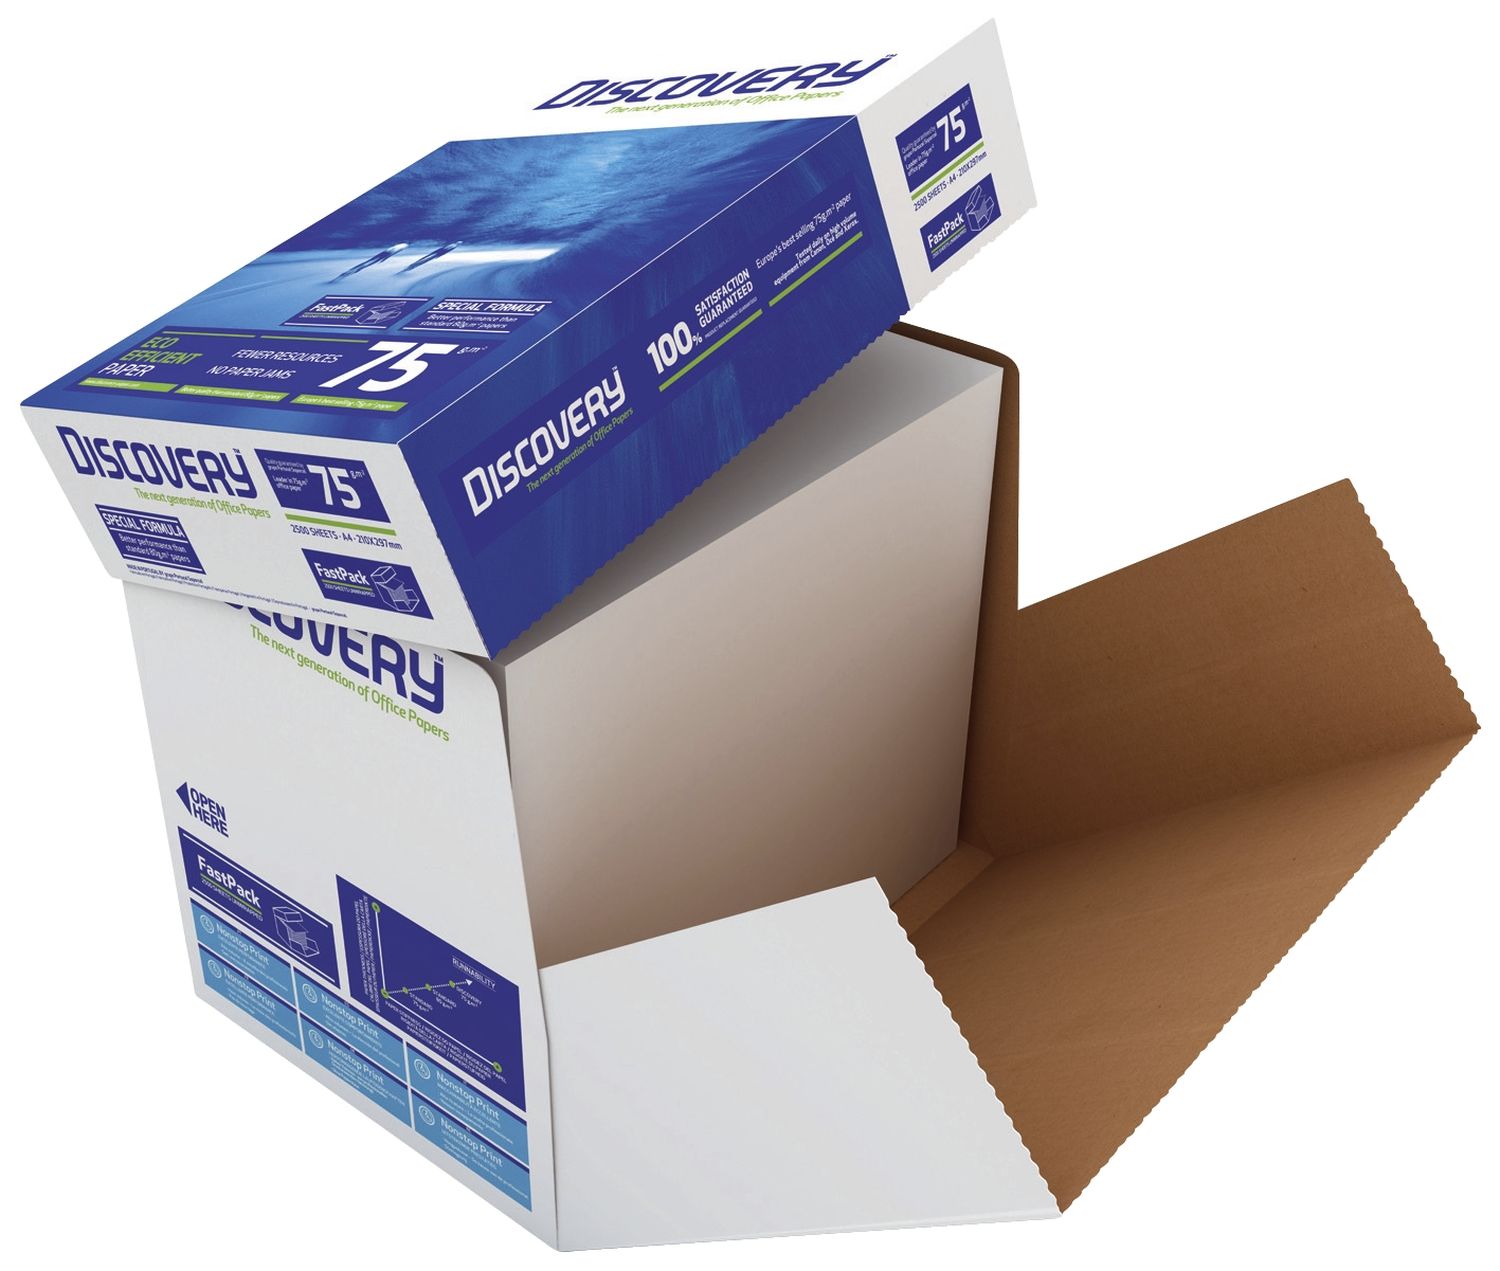 Kopierpapier Discovery Eco-efficient 834270A75S, DIN A4, holzfrei, 75 g/qm, weiß, 2.500 Blatt ungeriest im Karton